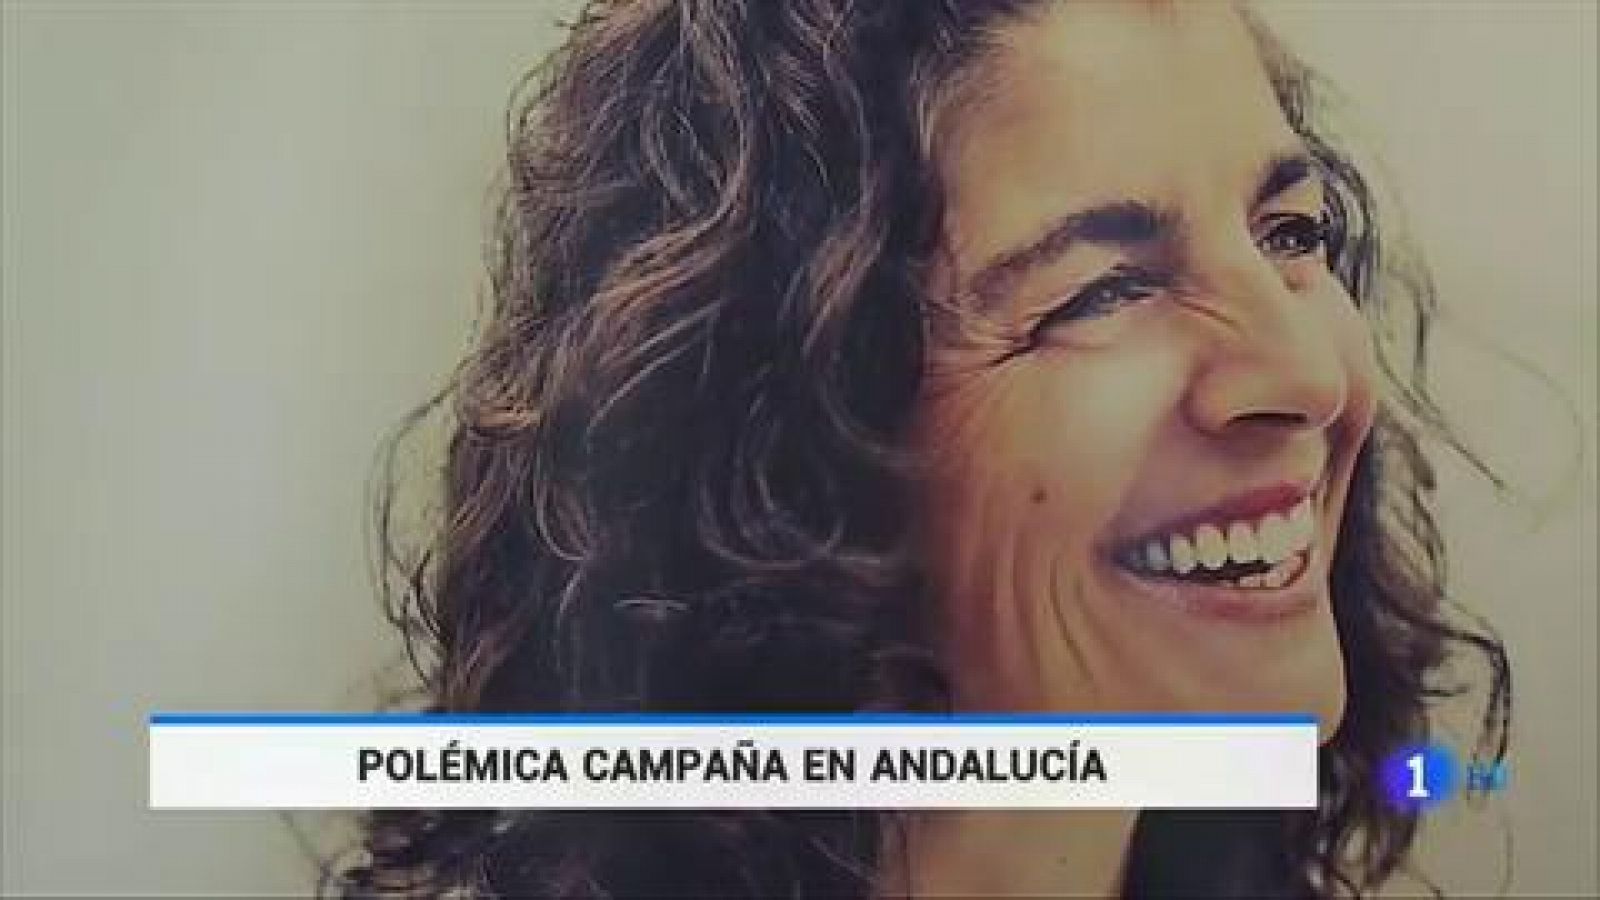 Una campaña contra la violencia machista desata la polémica en Andalucía